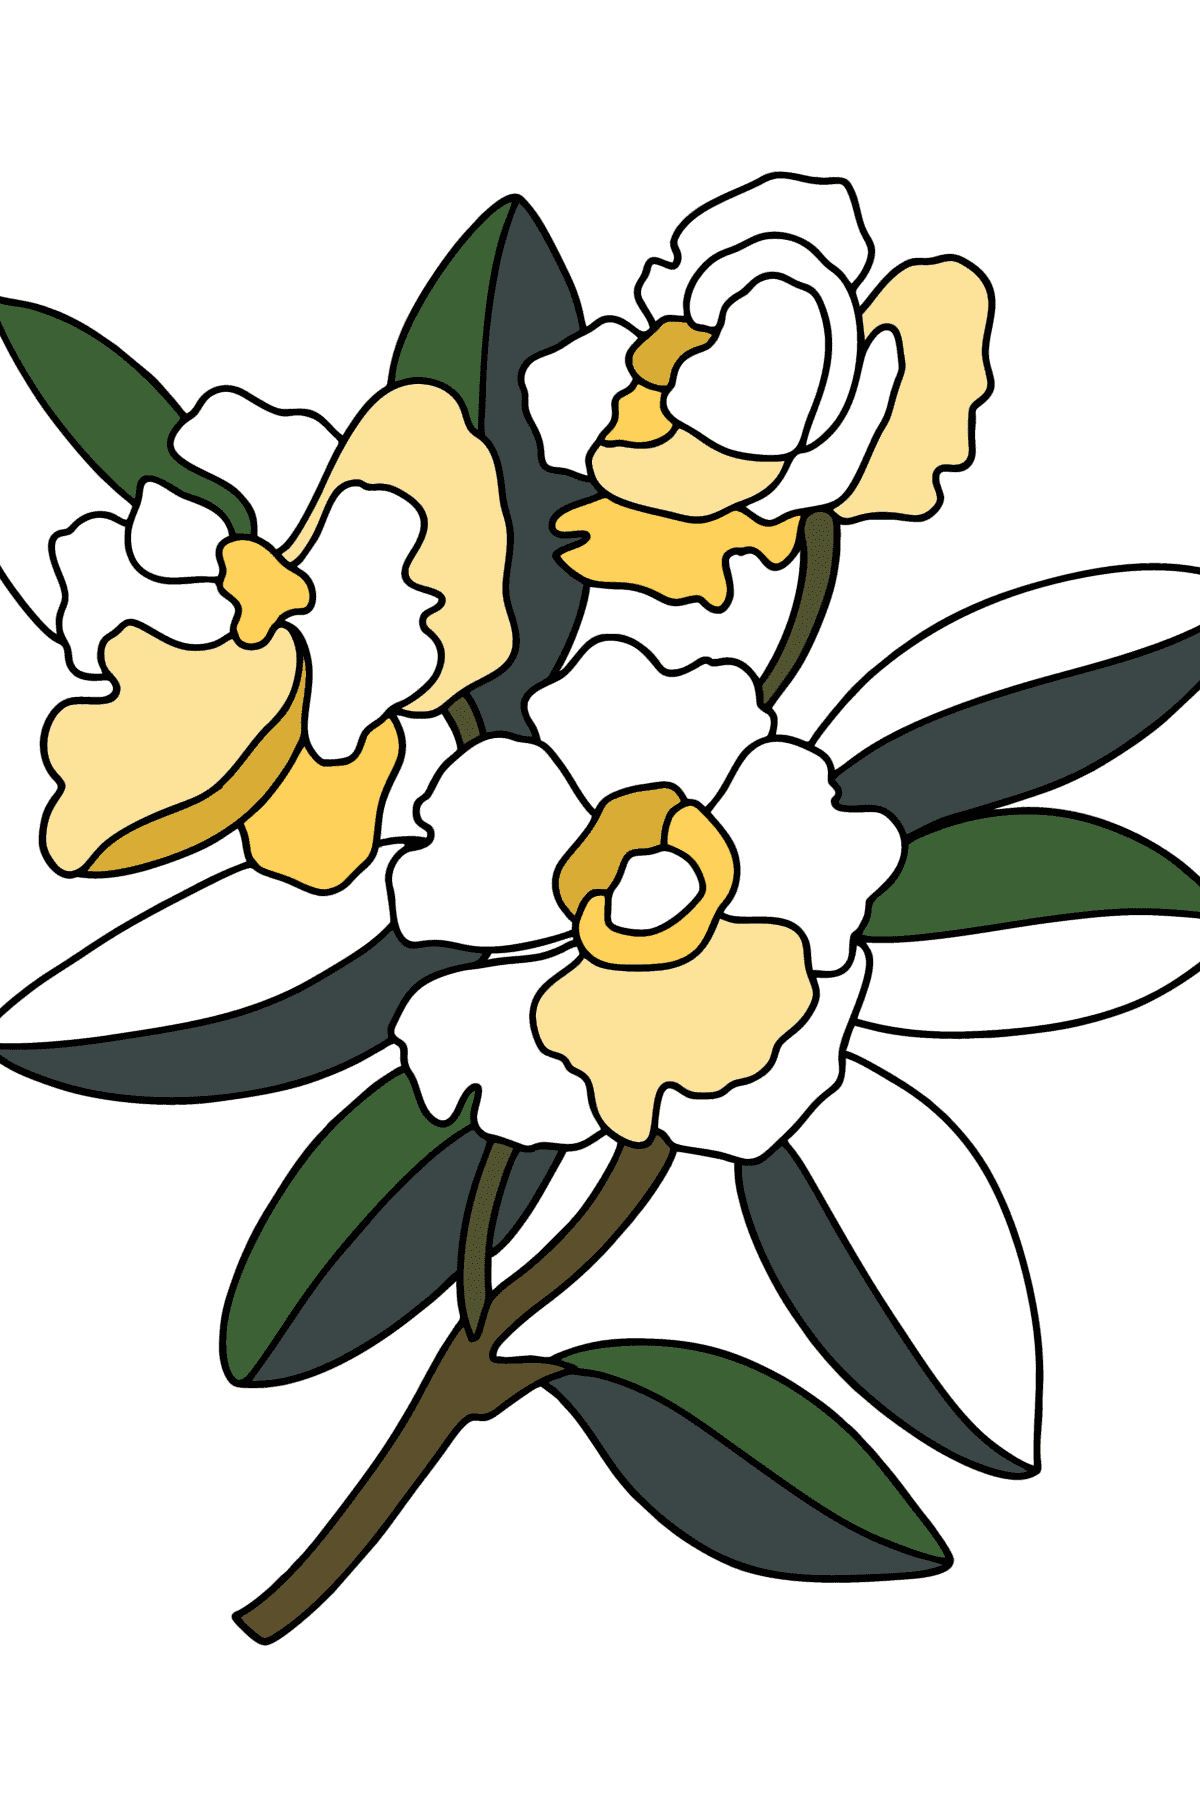 Disegno di Gardenia da colorare - Disegni da colorare per bambini